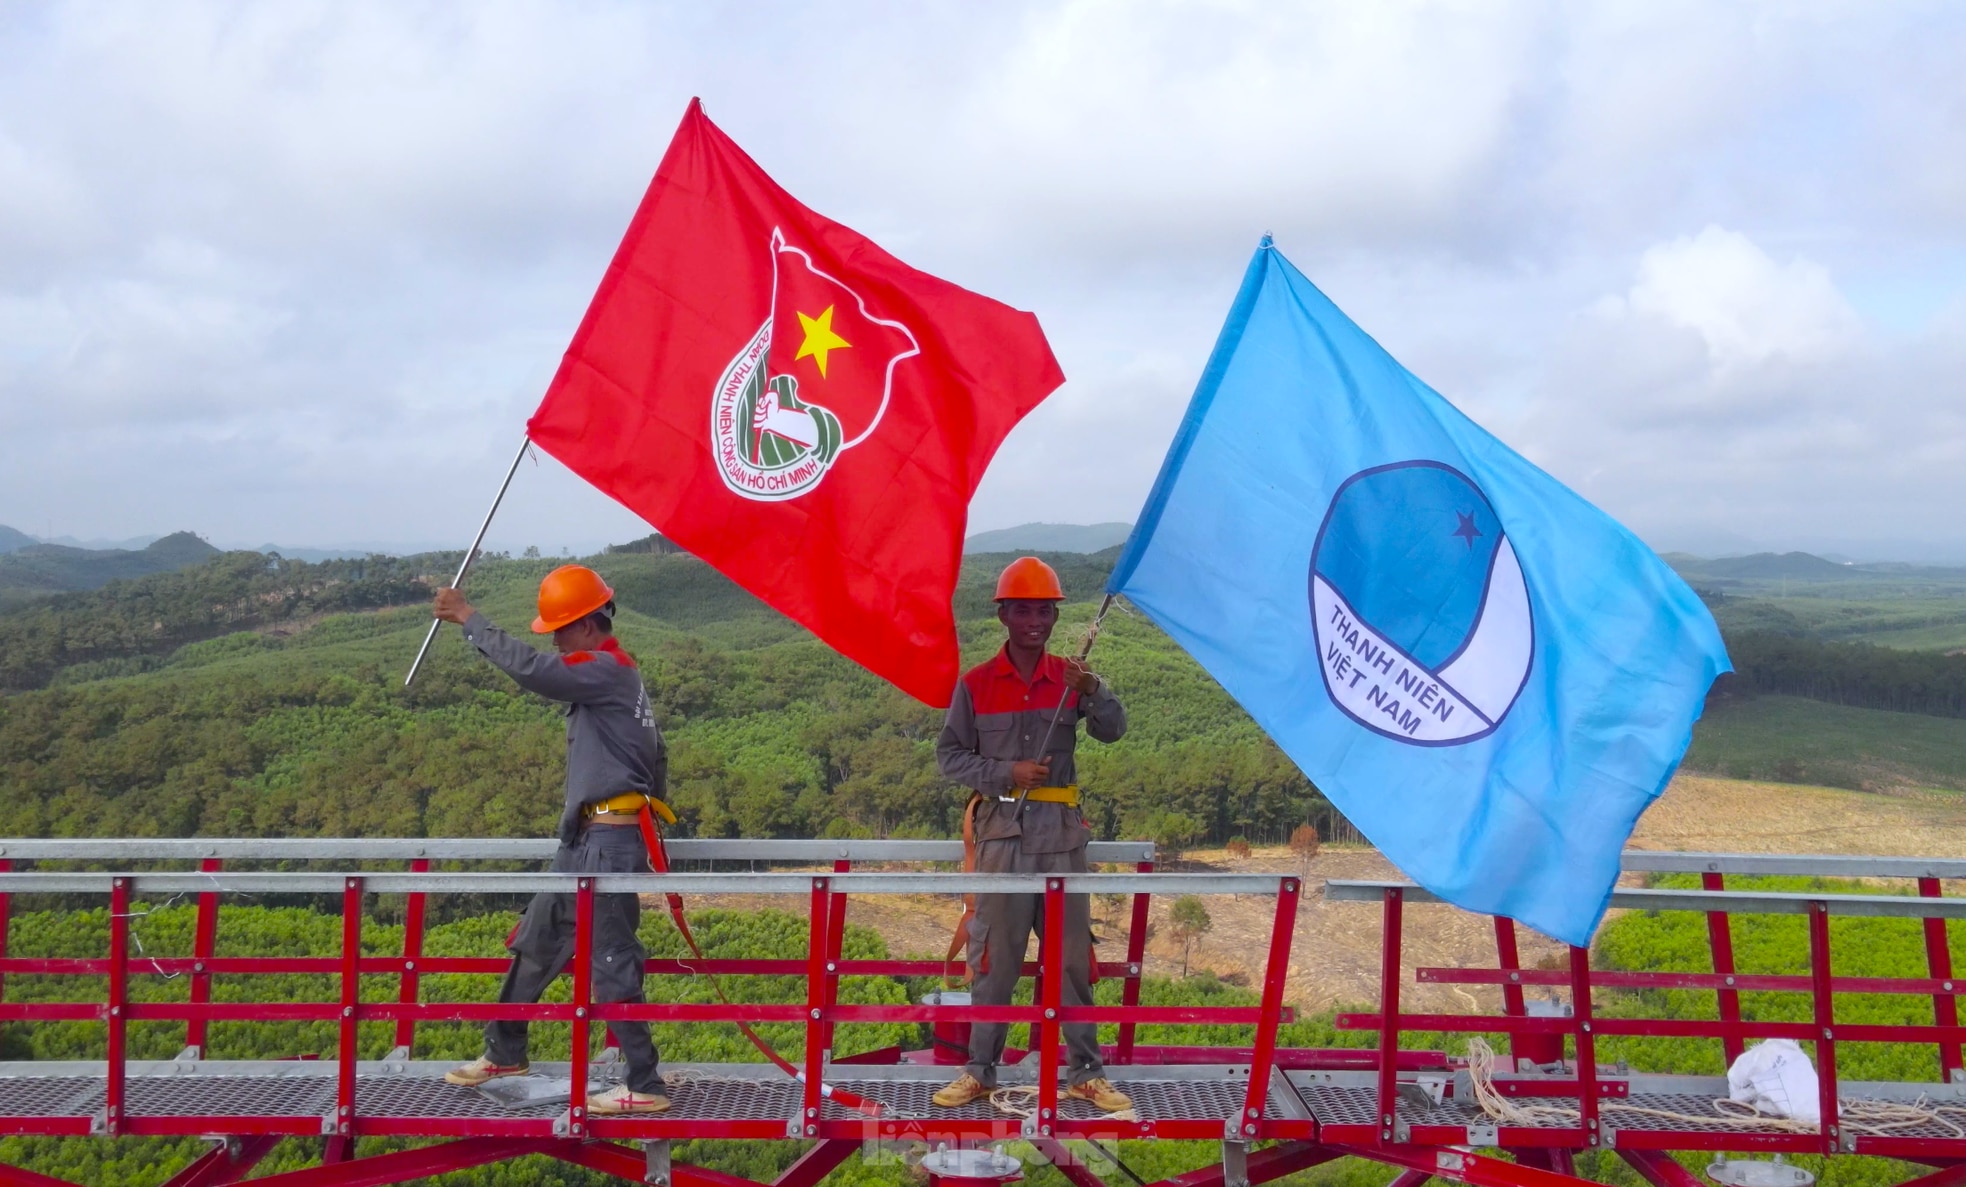 Tự hào lá cờ Đoàn phấp phới tung bay trên cột điện 500kV mạch 3 đoạn qua Nghệ An ảnh 13